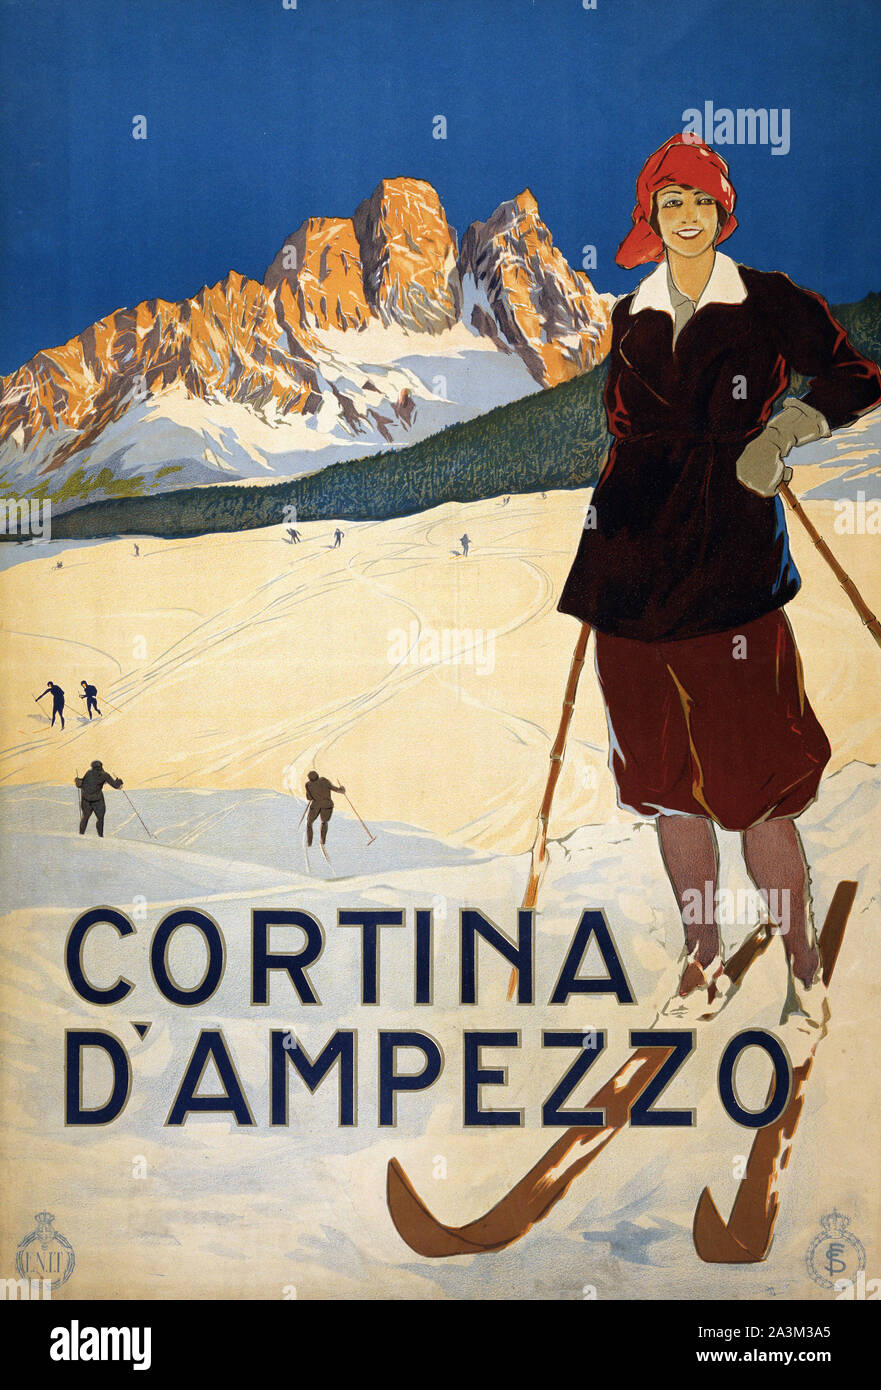 Cortina d'Ampezzo - Jeux olympiques d'hiver affiche ancienne Banque D'Images